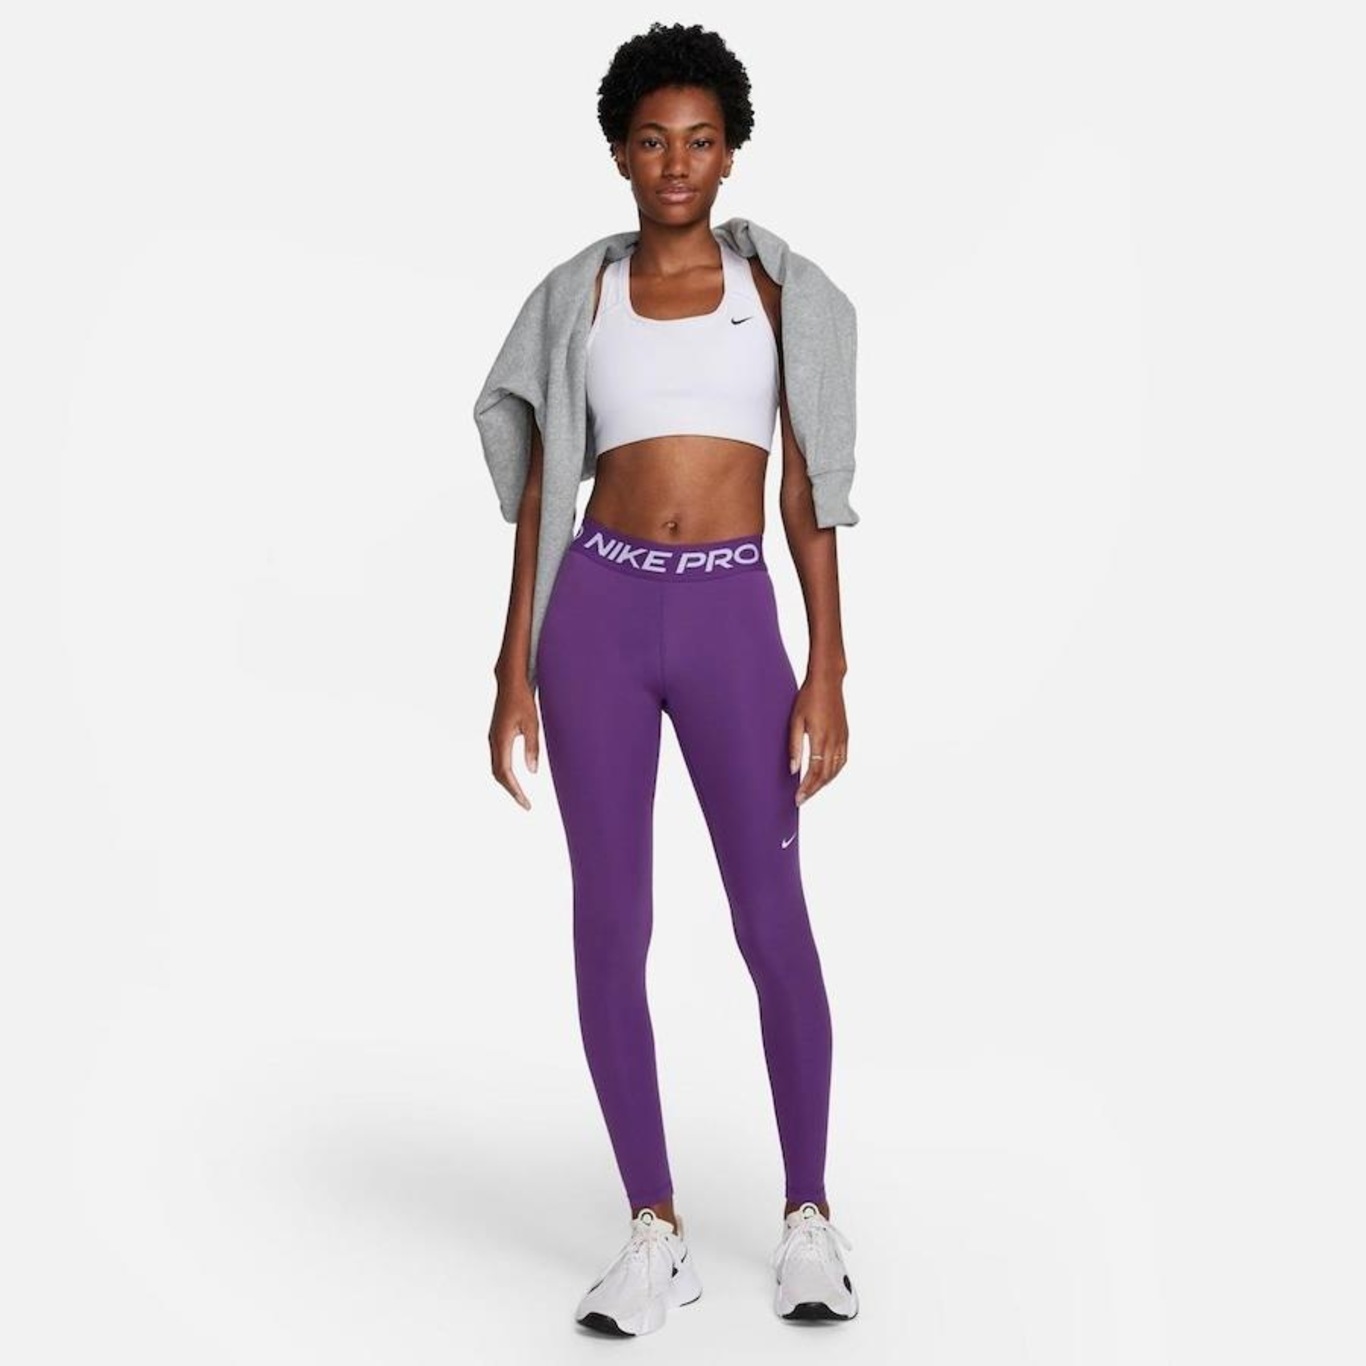 Nike Pro Training 7/8 leggings in purple